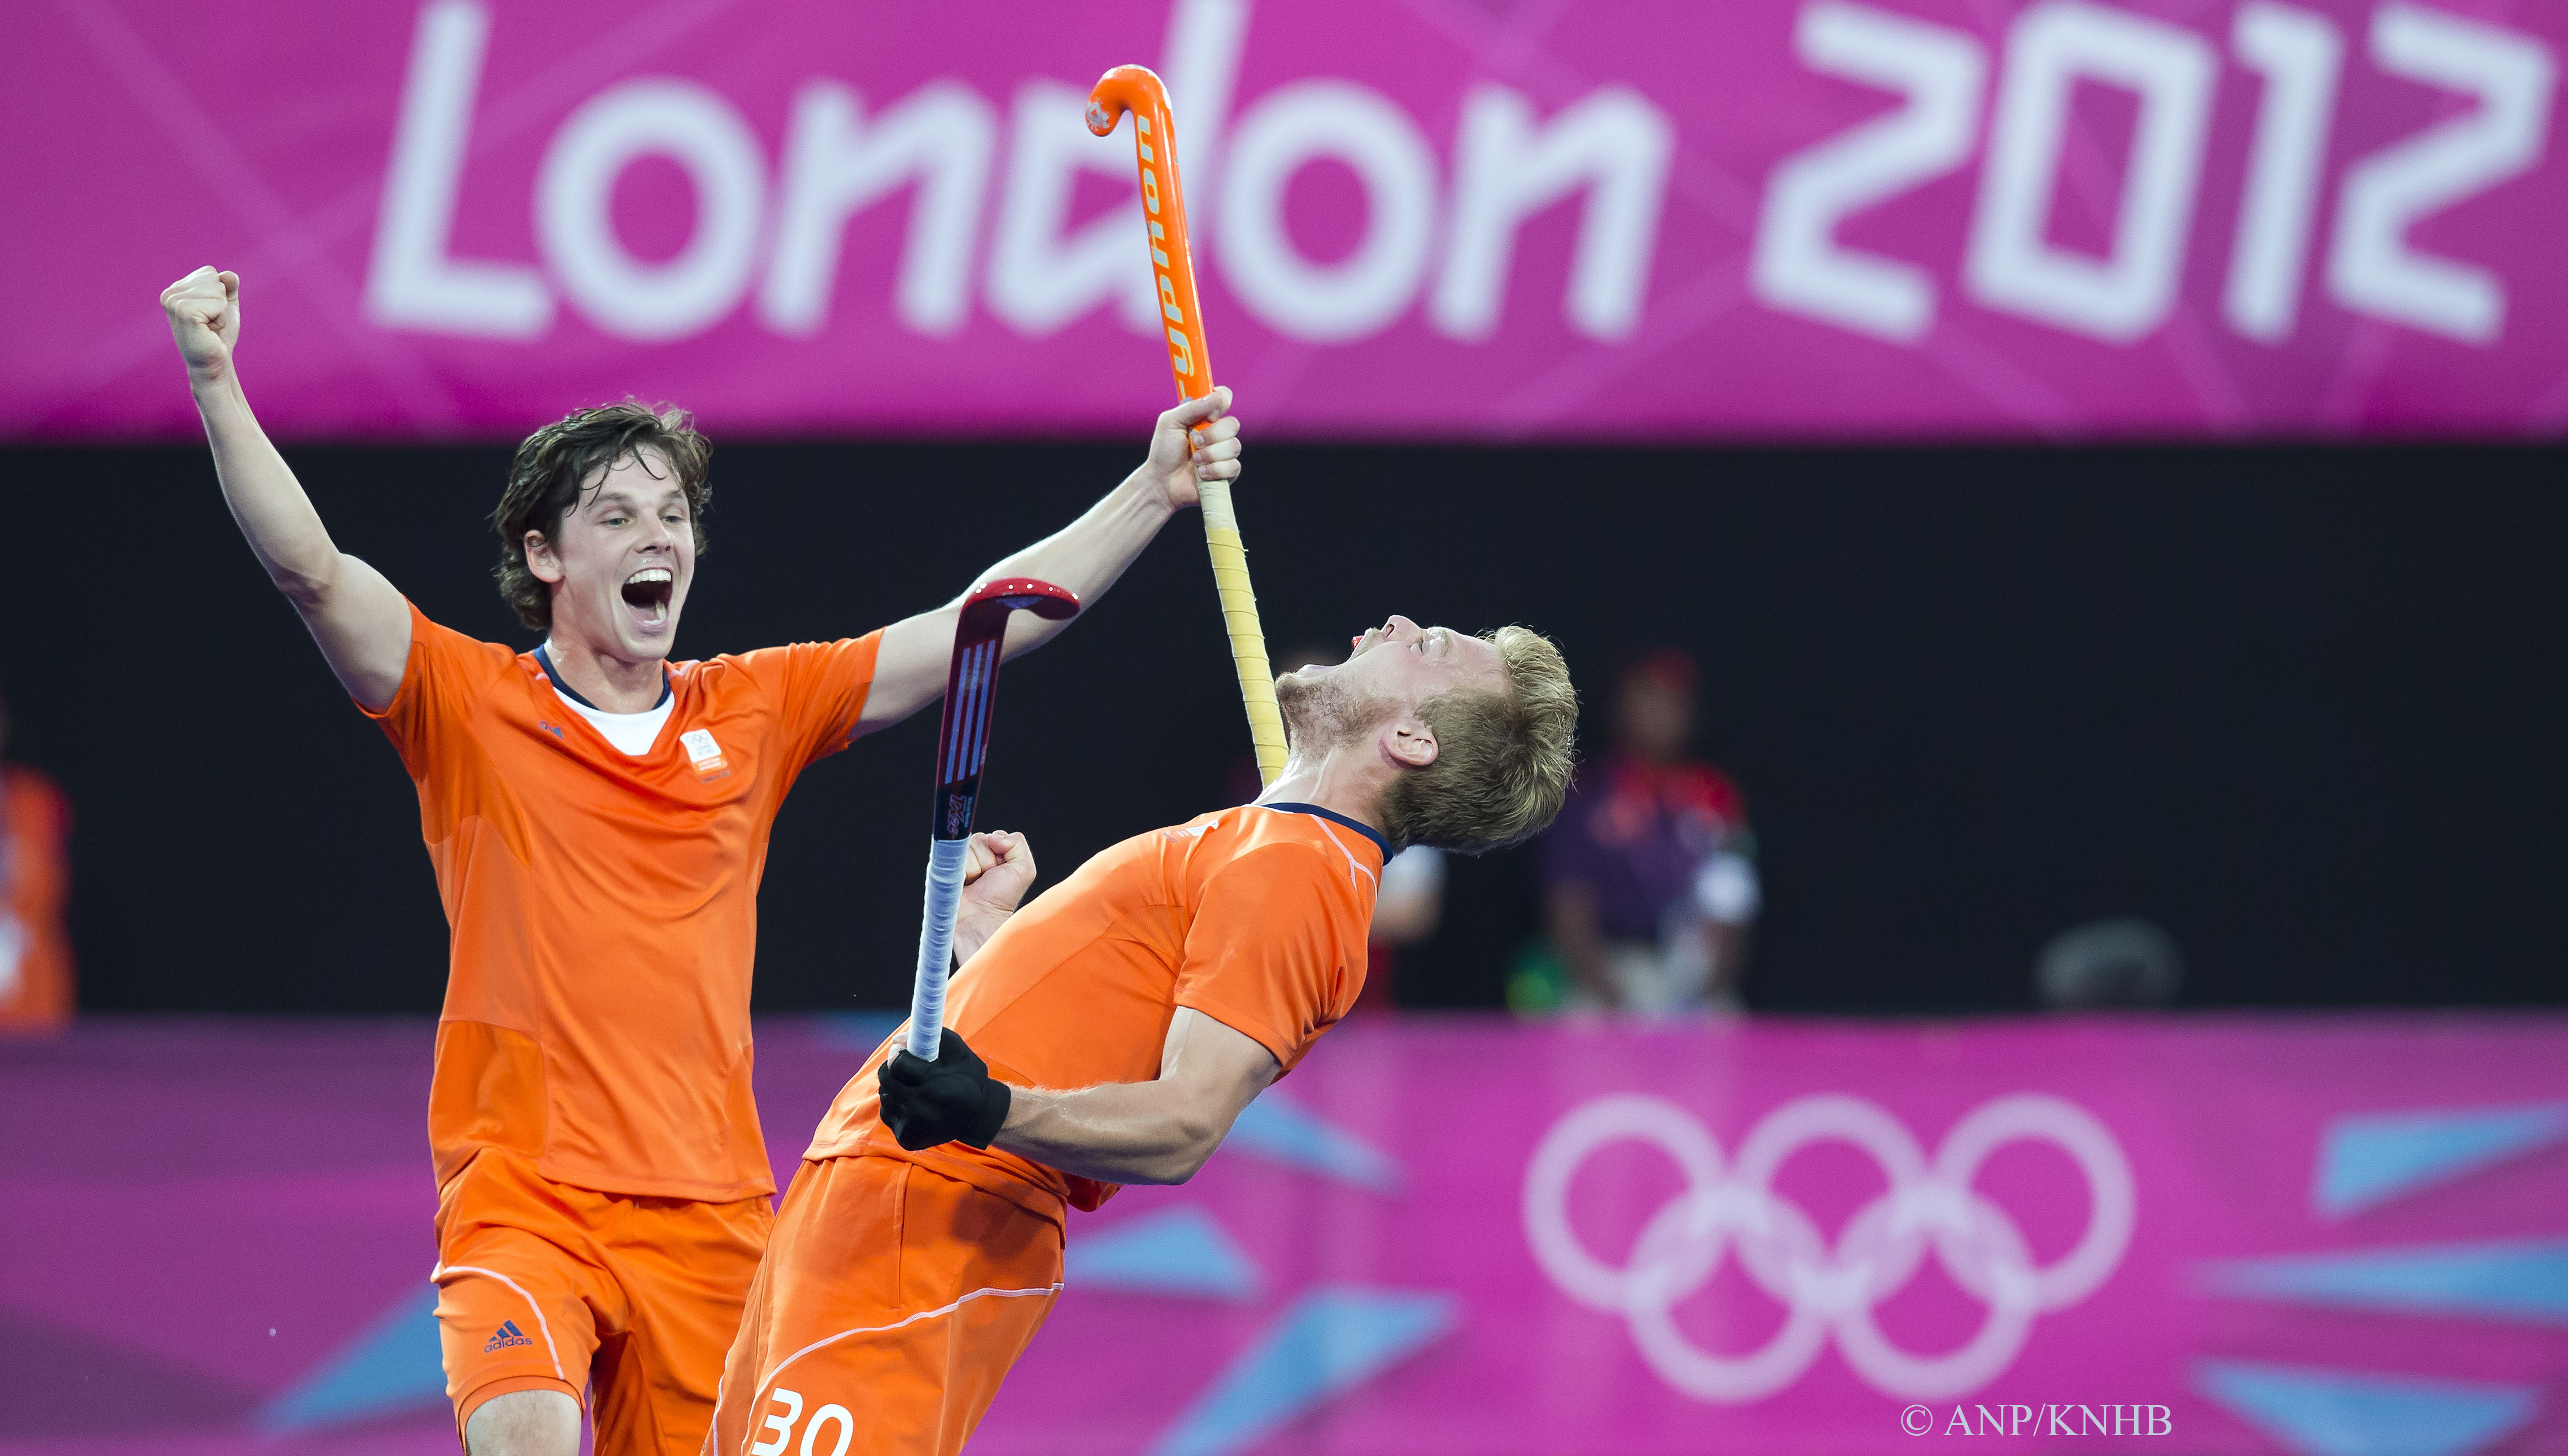 Londen - Mink van der Weerden heeft de stand op 3-1 gebracht, links Wouter Jolie, tijdens de halve finale van het olympische hockeytoernooi tussen de mannen van Nederland en Groot Brittannie.